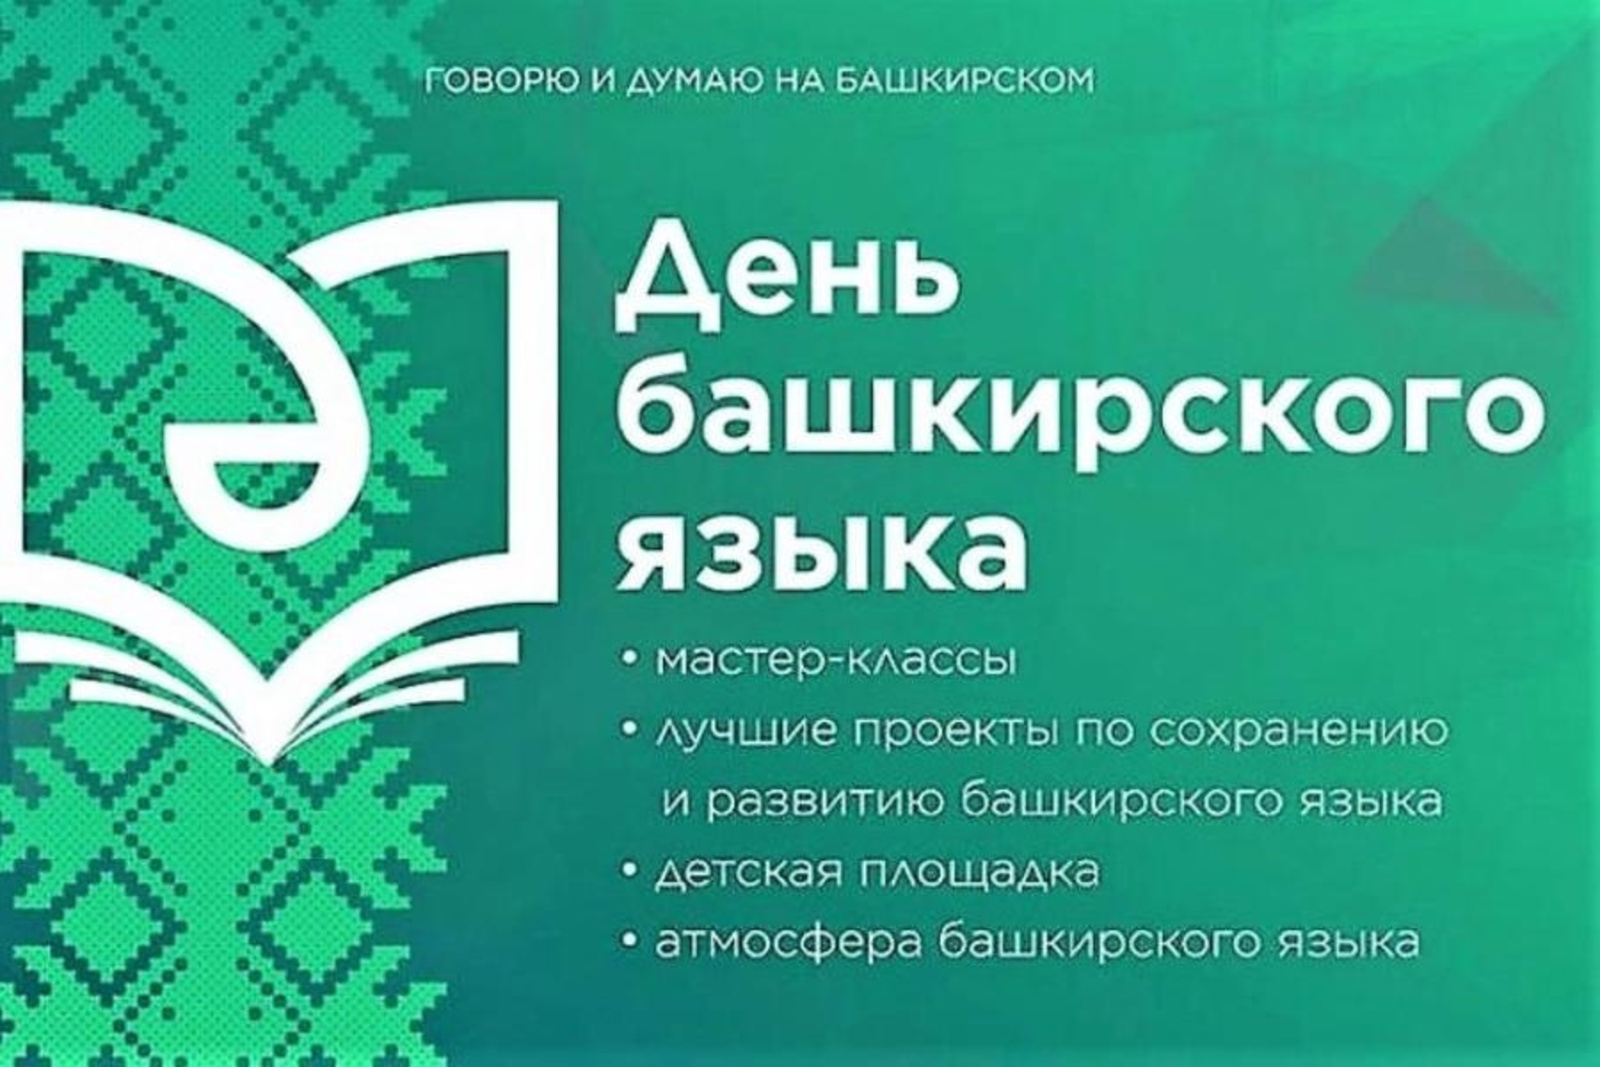 Сегодня в нашей республике отмечается День башкирского языка